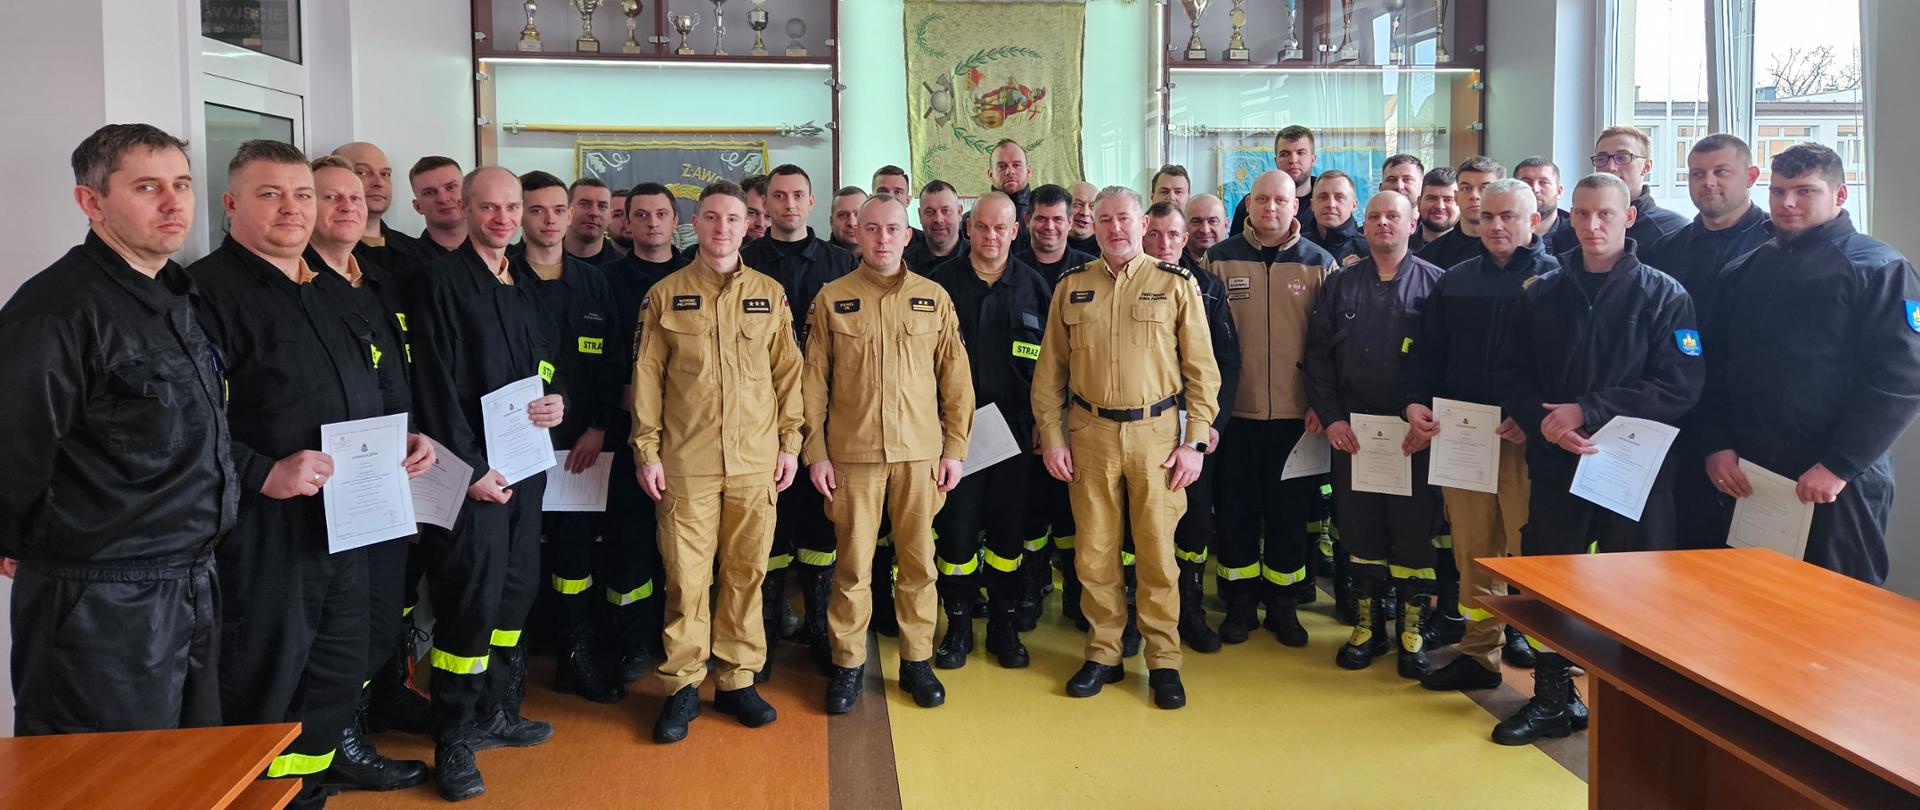 Zdjęcie grupowe uczestników szkolenia dowódców OSP.